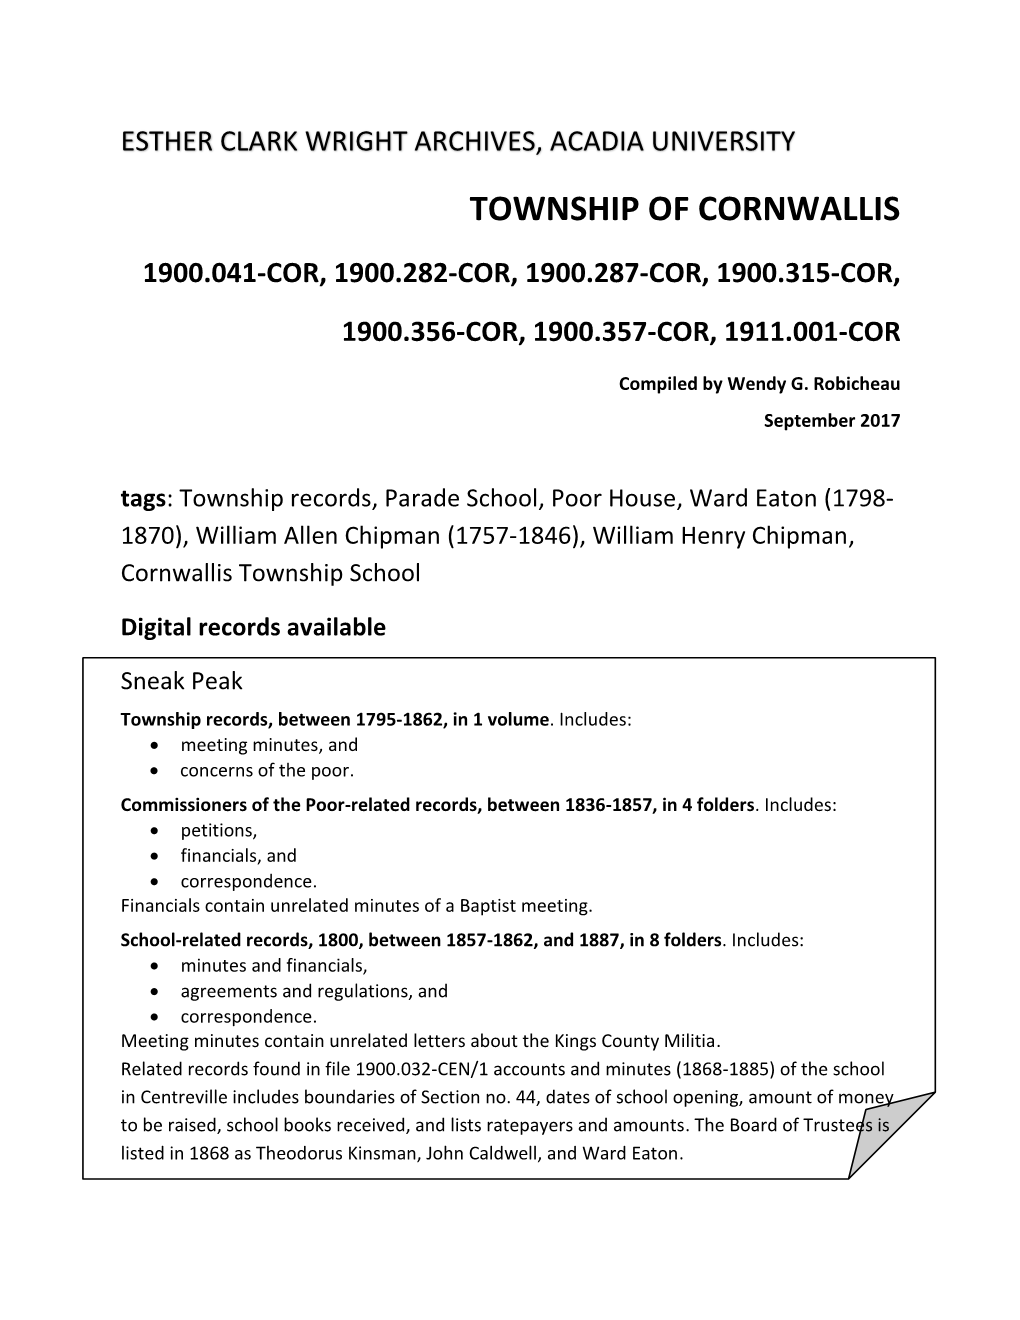 Township of Cornwallis